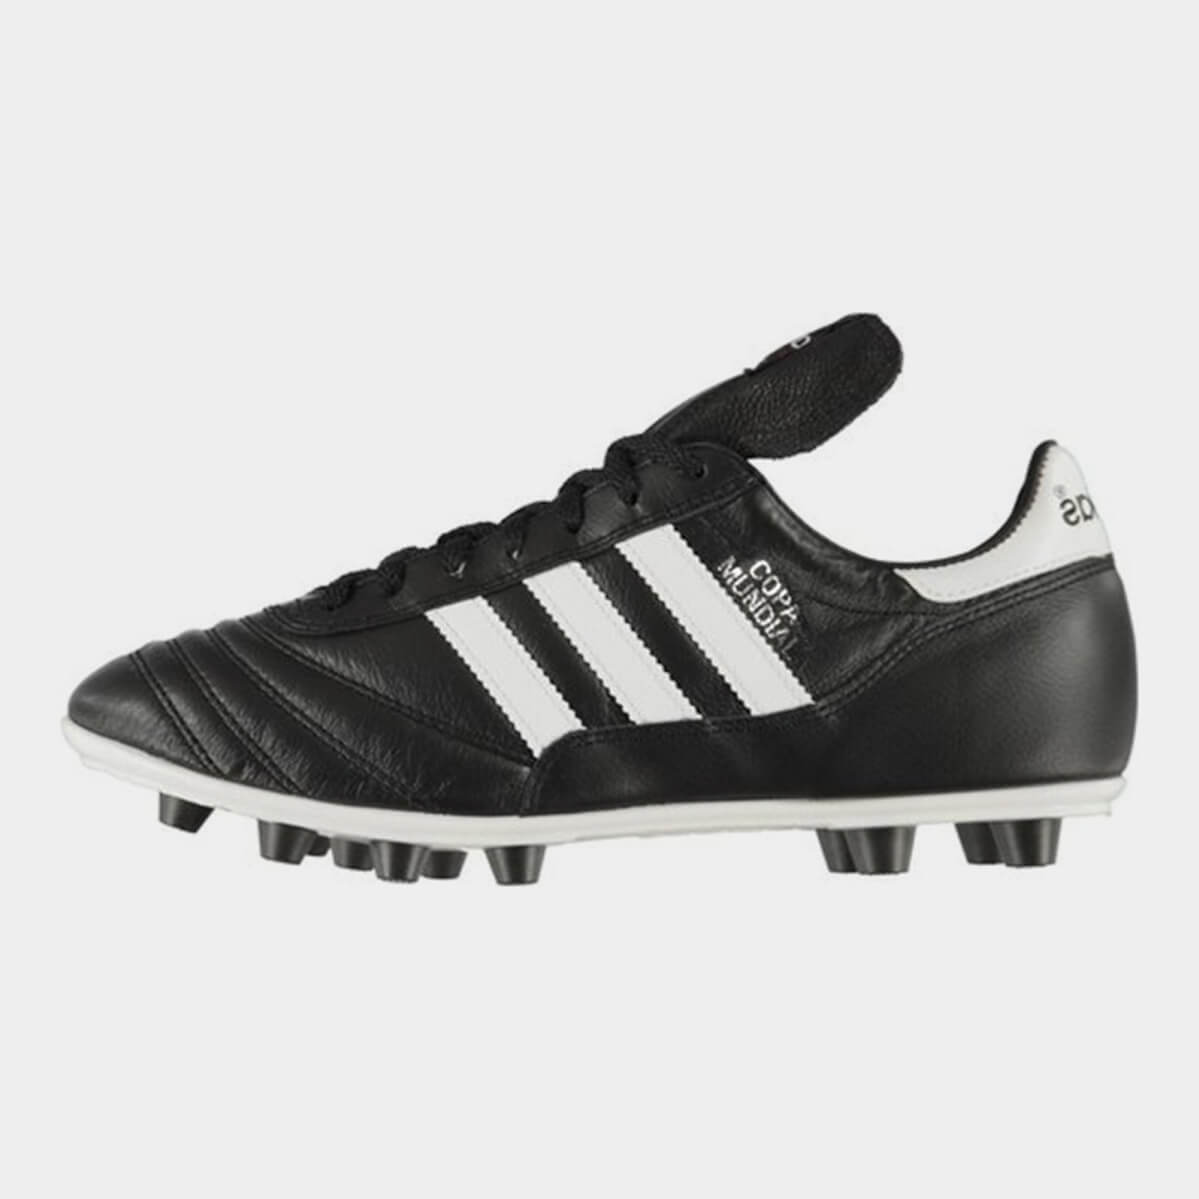 ADIDAS Uomo Copa Mundial FG scarpe da calcio | eBay